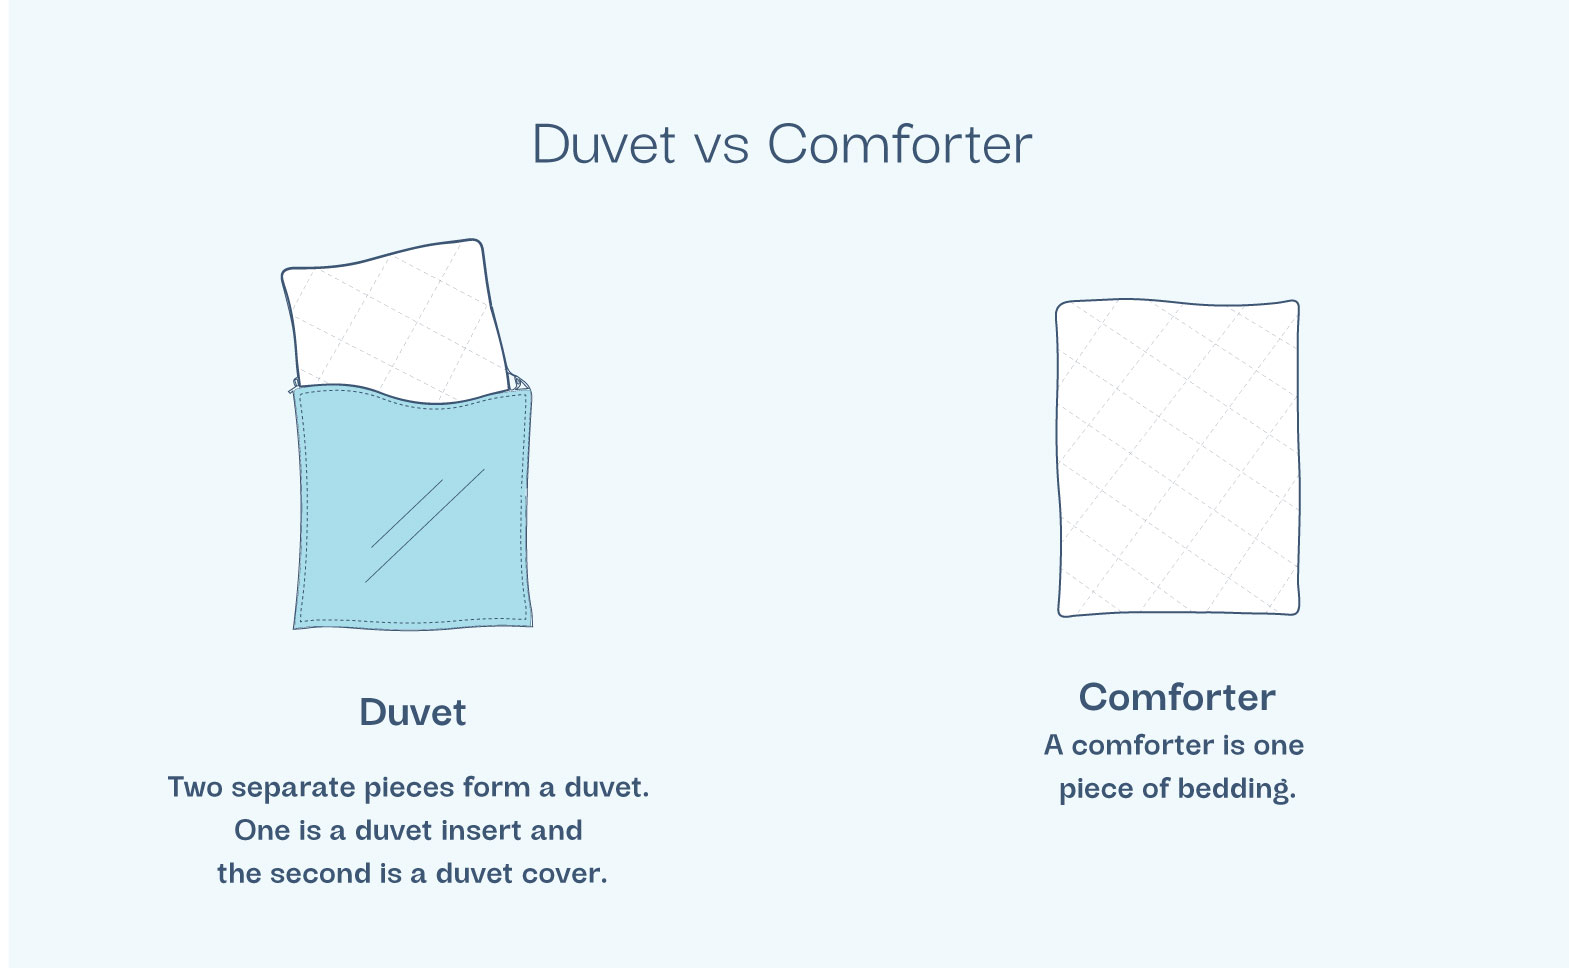 The Duvet Comforter